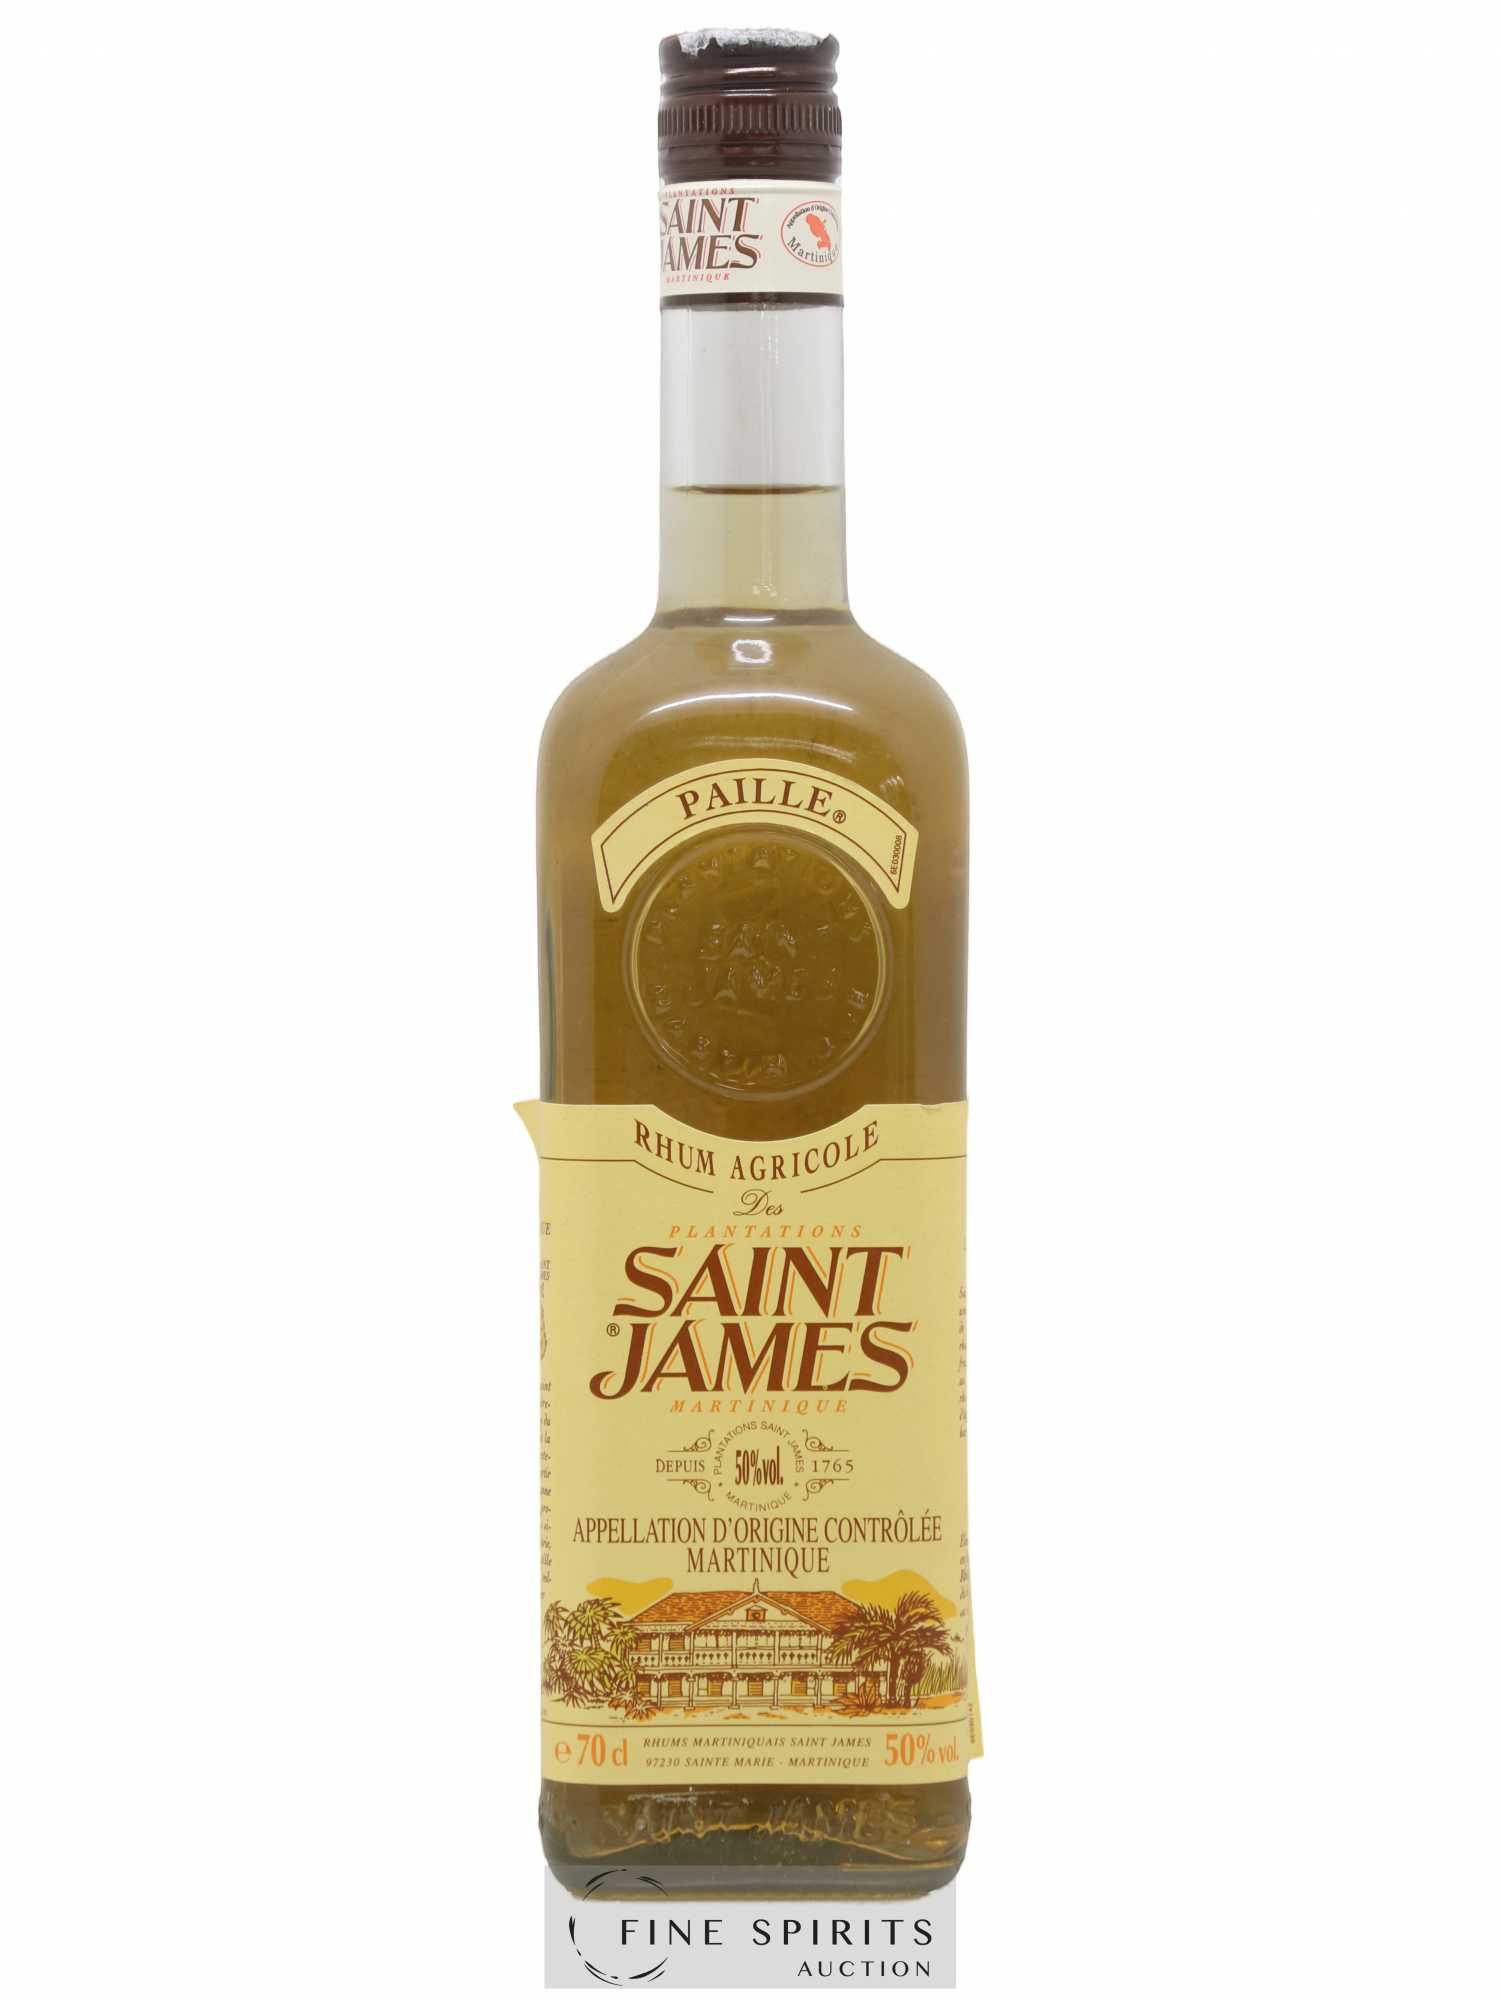 Saint James Of. Paille